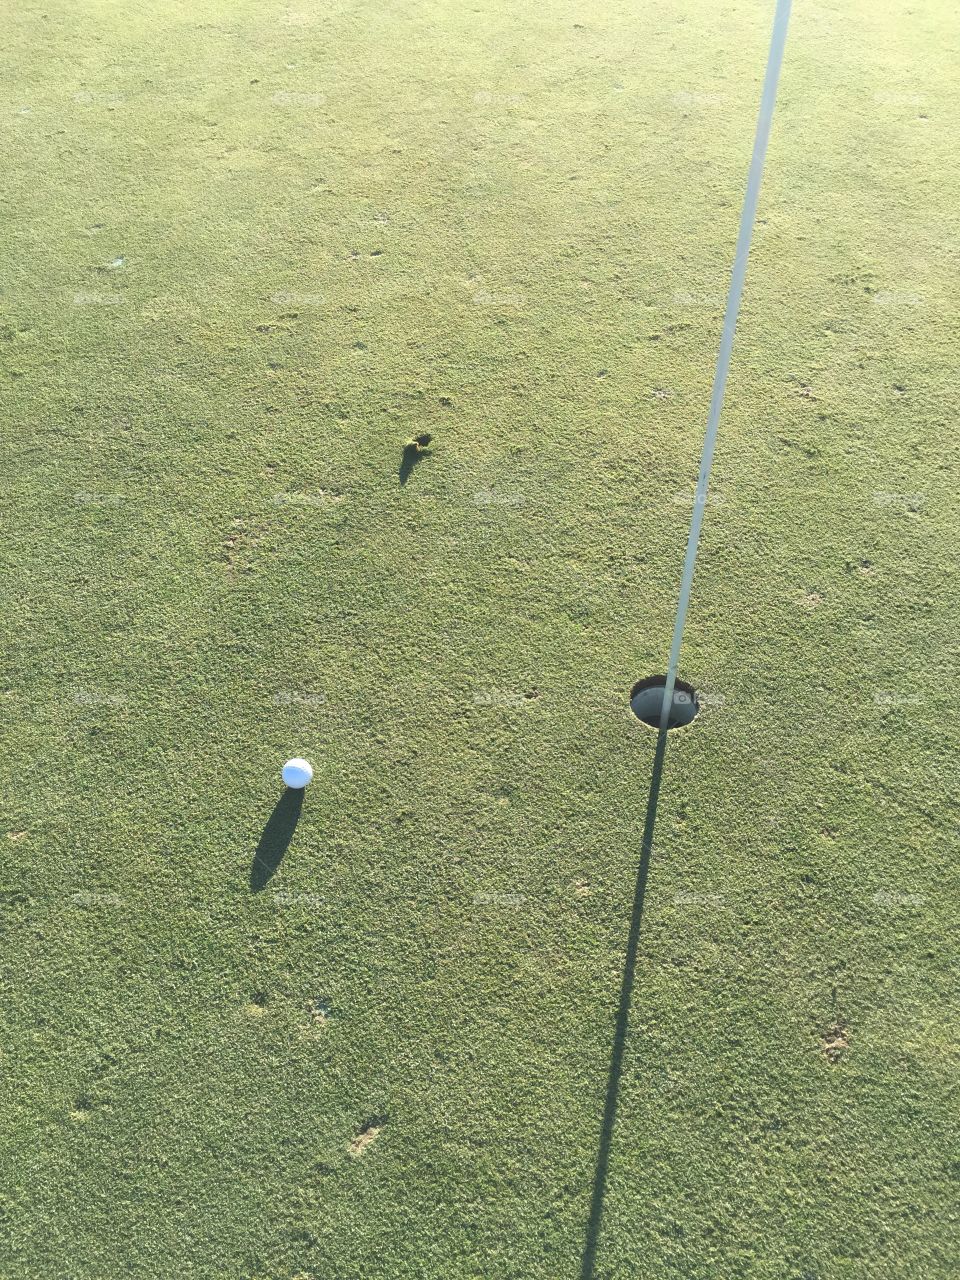 Approach shot. Golf